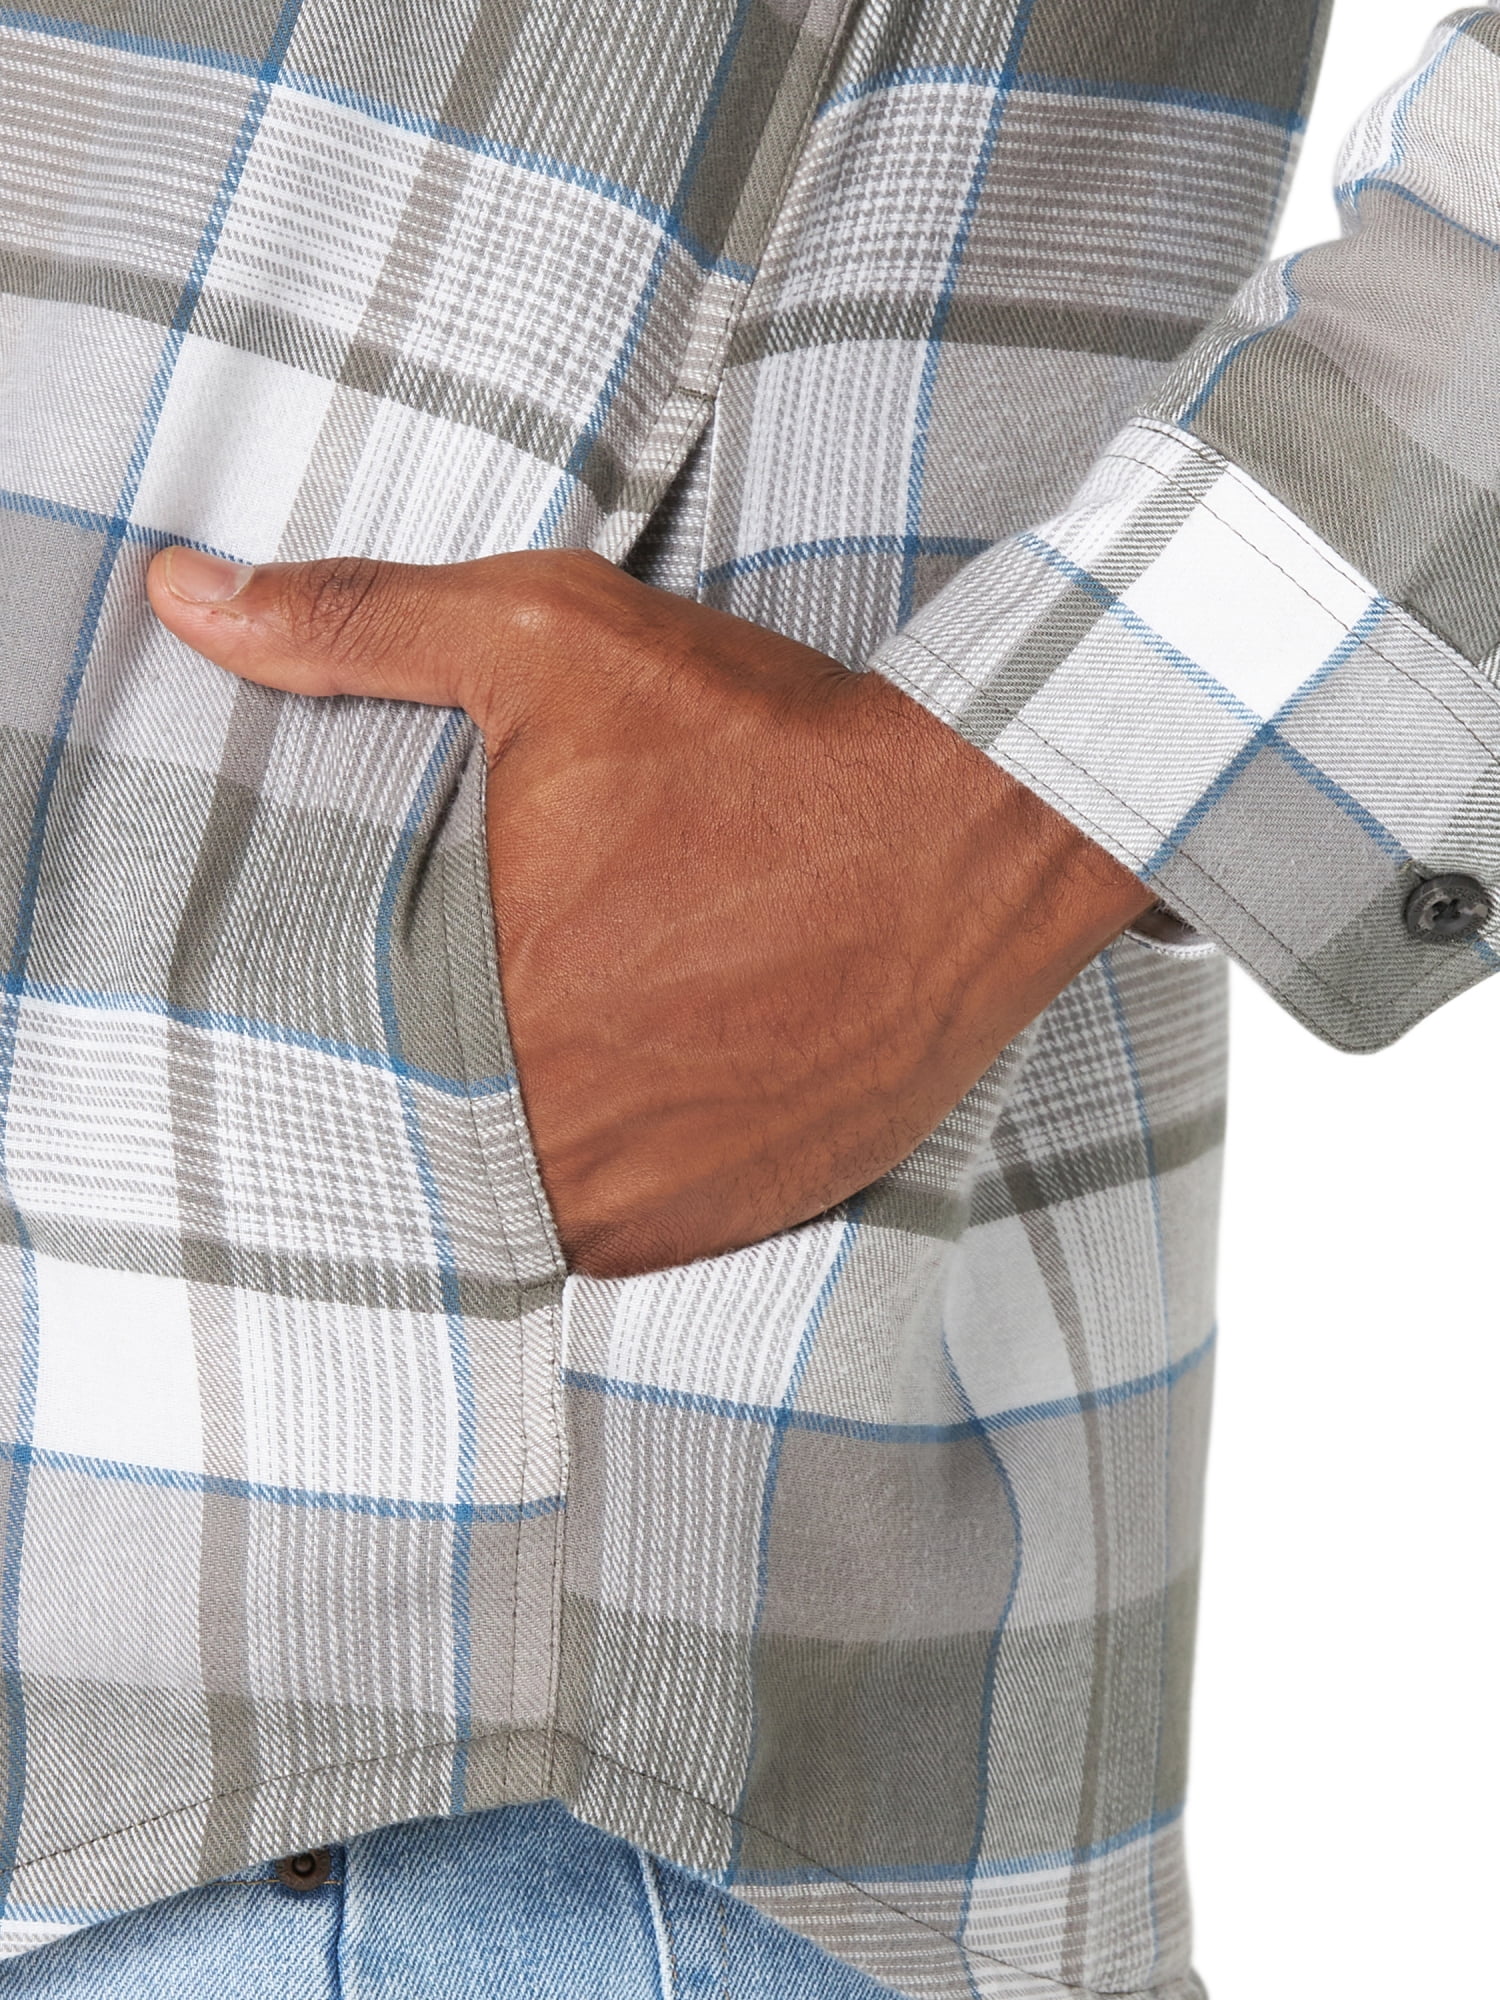 Steken Adelaide Cursus Wrangler Men's Quilted Lined Shirt Jacket - Walmart.com